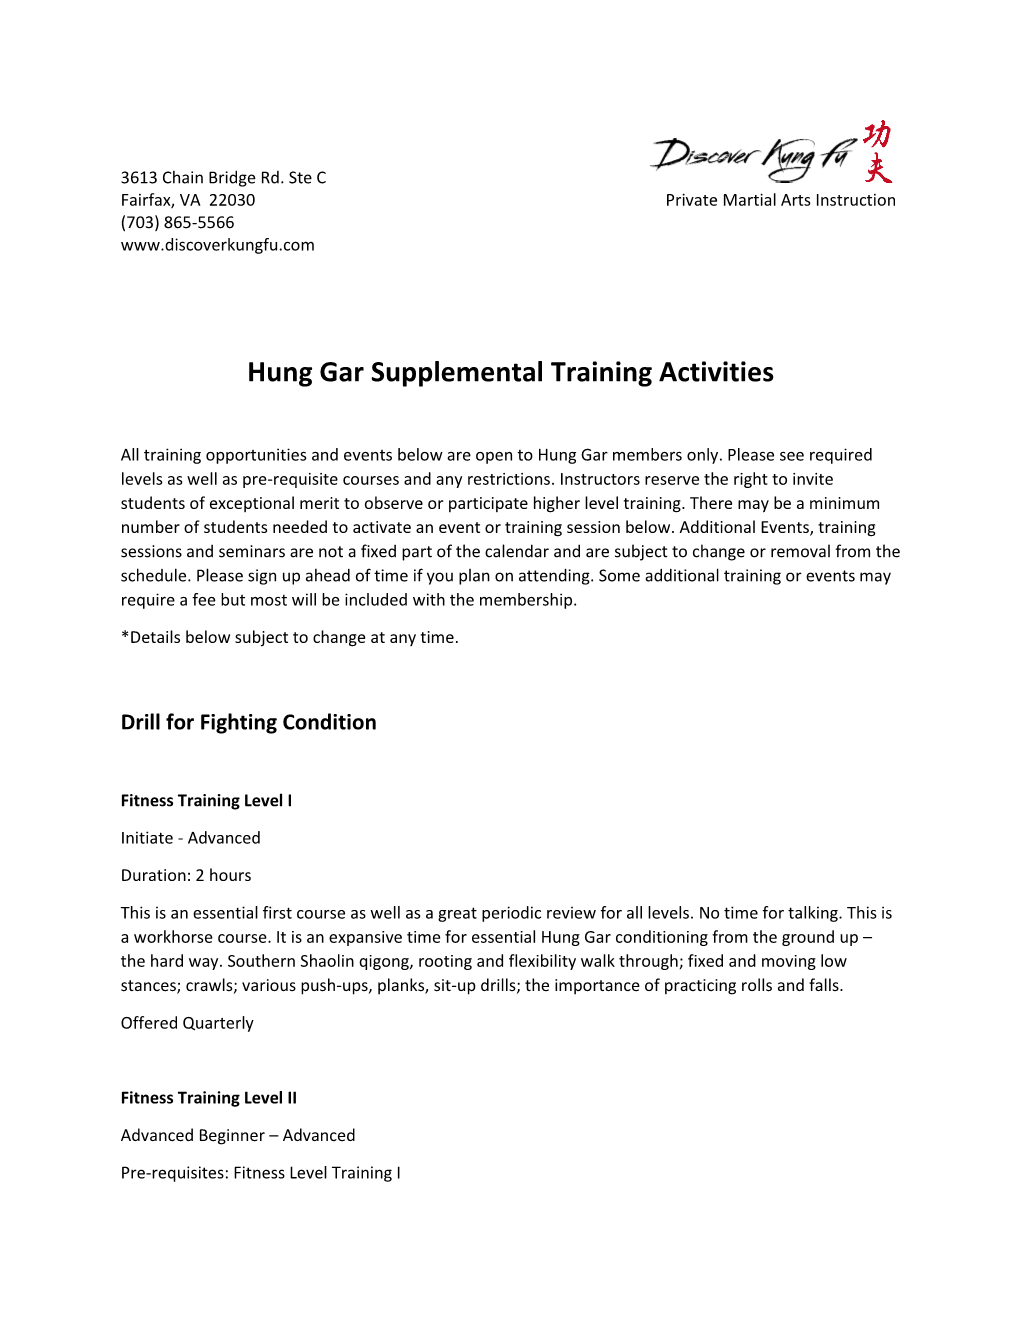 Hung Gar Supplemental Training Activities